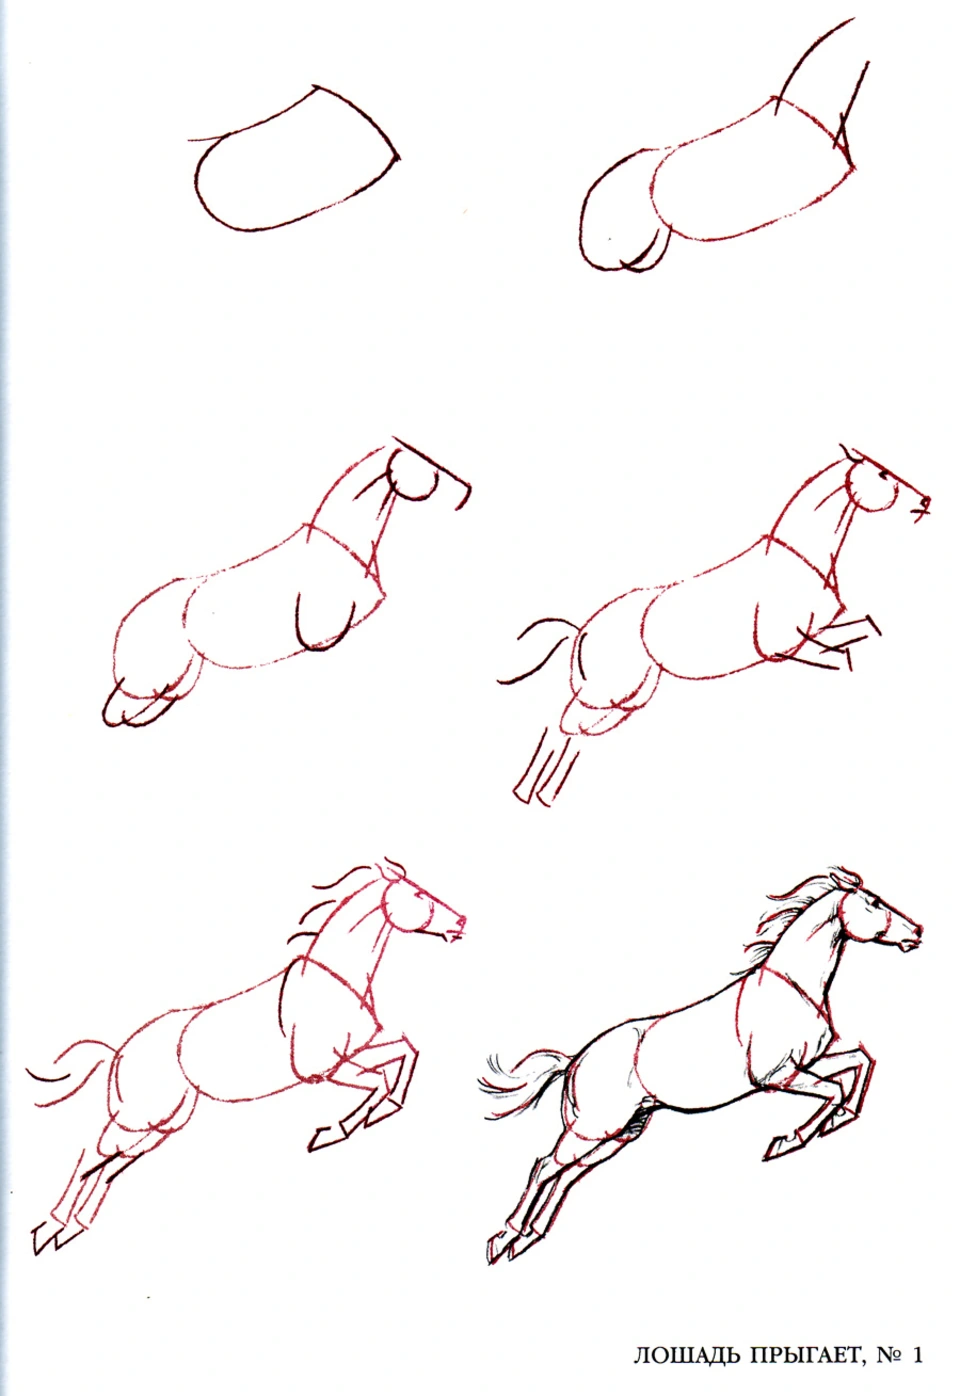 Рисунок лошади карандашом поэтапно